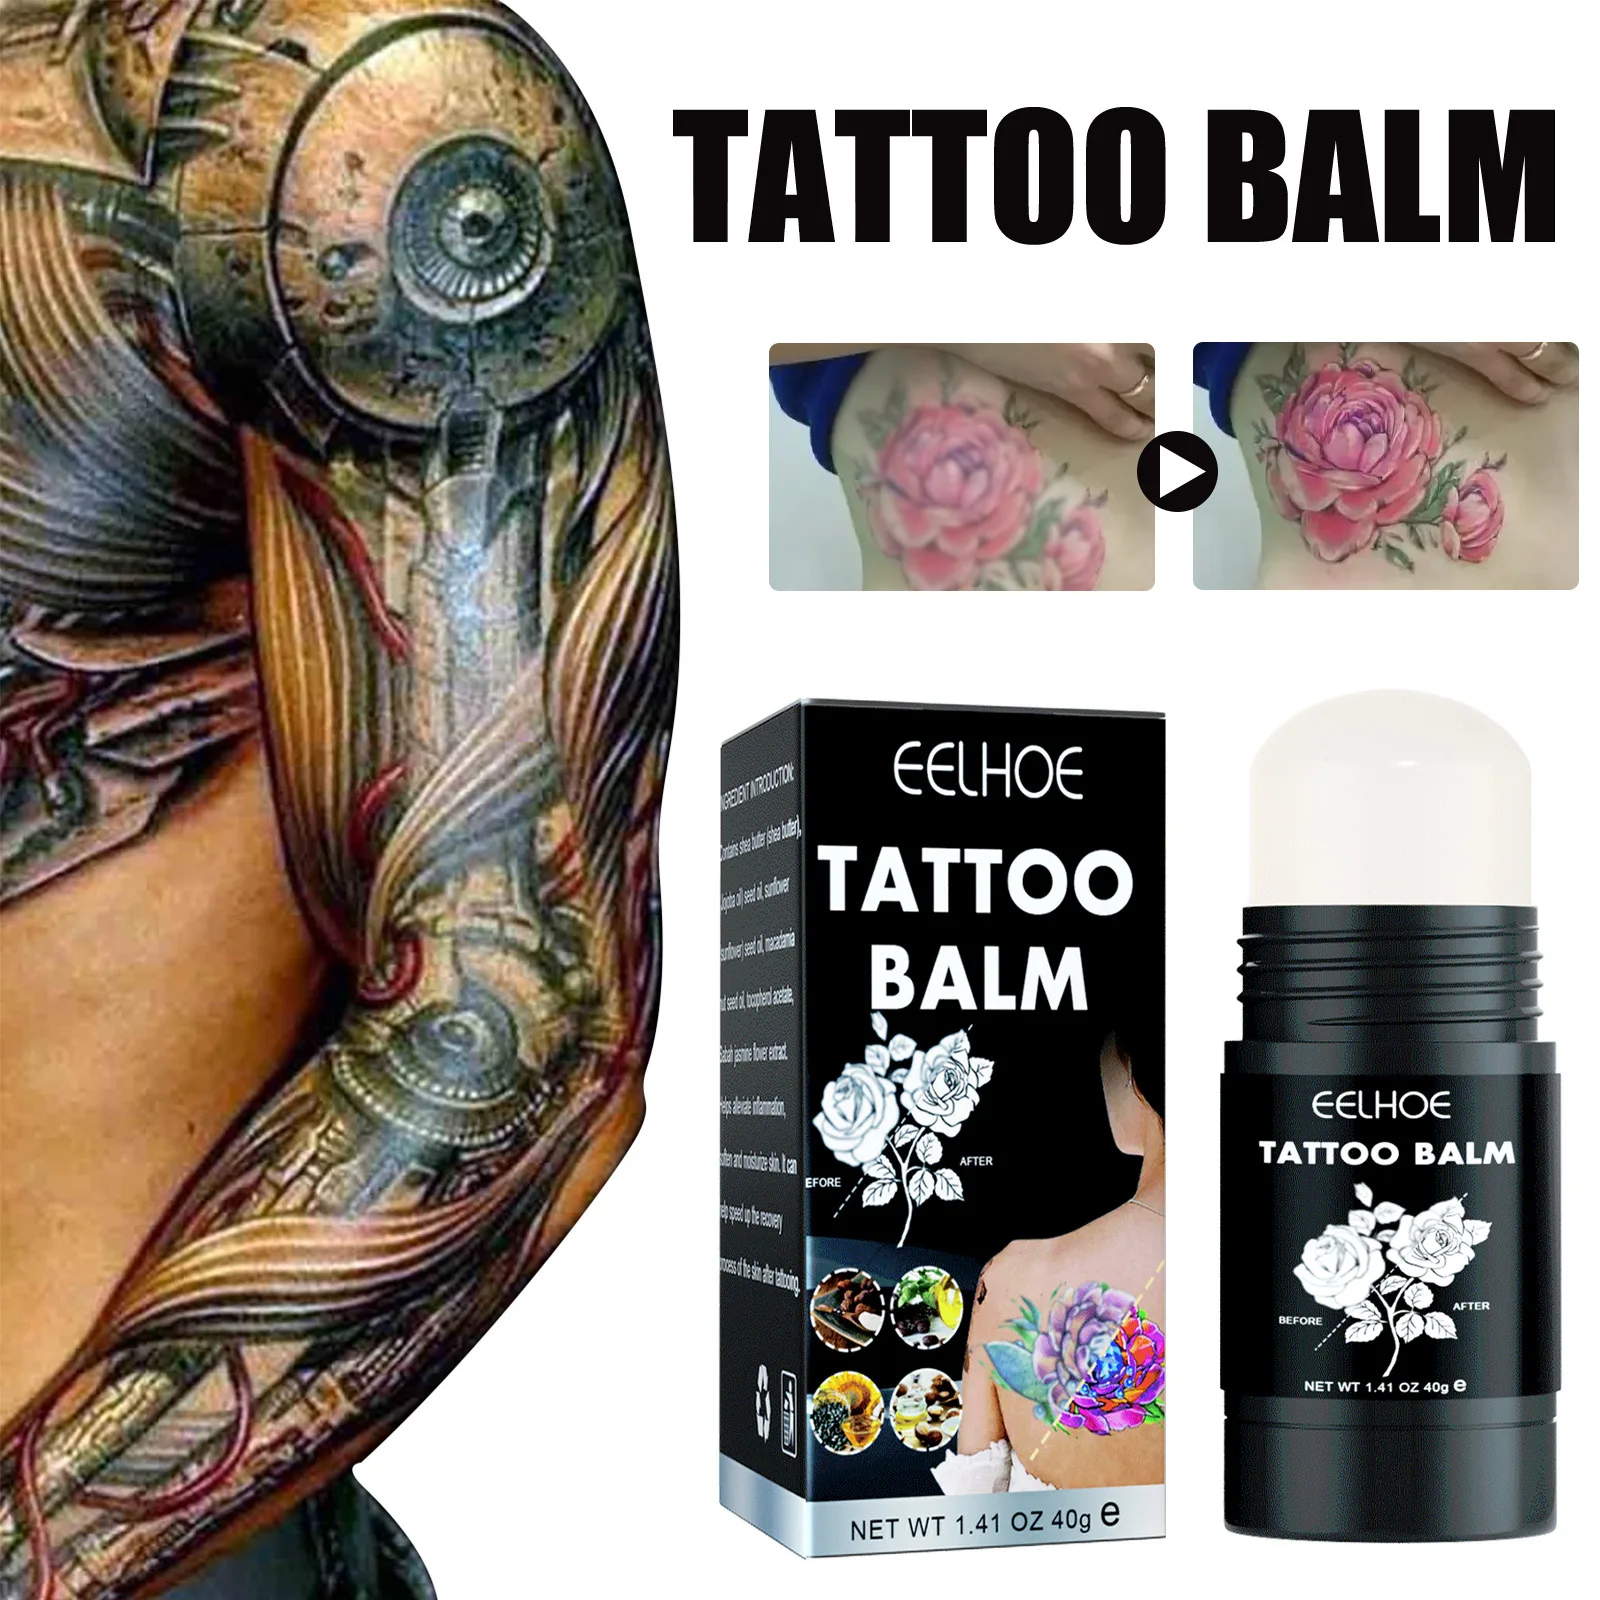 

Крем для ухода за татуировками Eelhoe, Осветляющий, рельефный бальзам, увлажняющий, цветной бальзам для улучшения кожи, палочка для восстановления бровей и татуировок